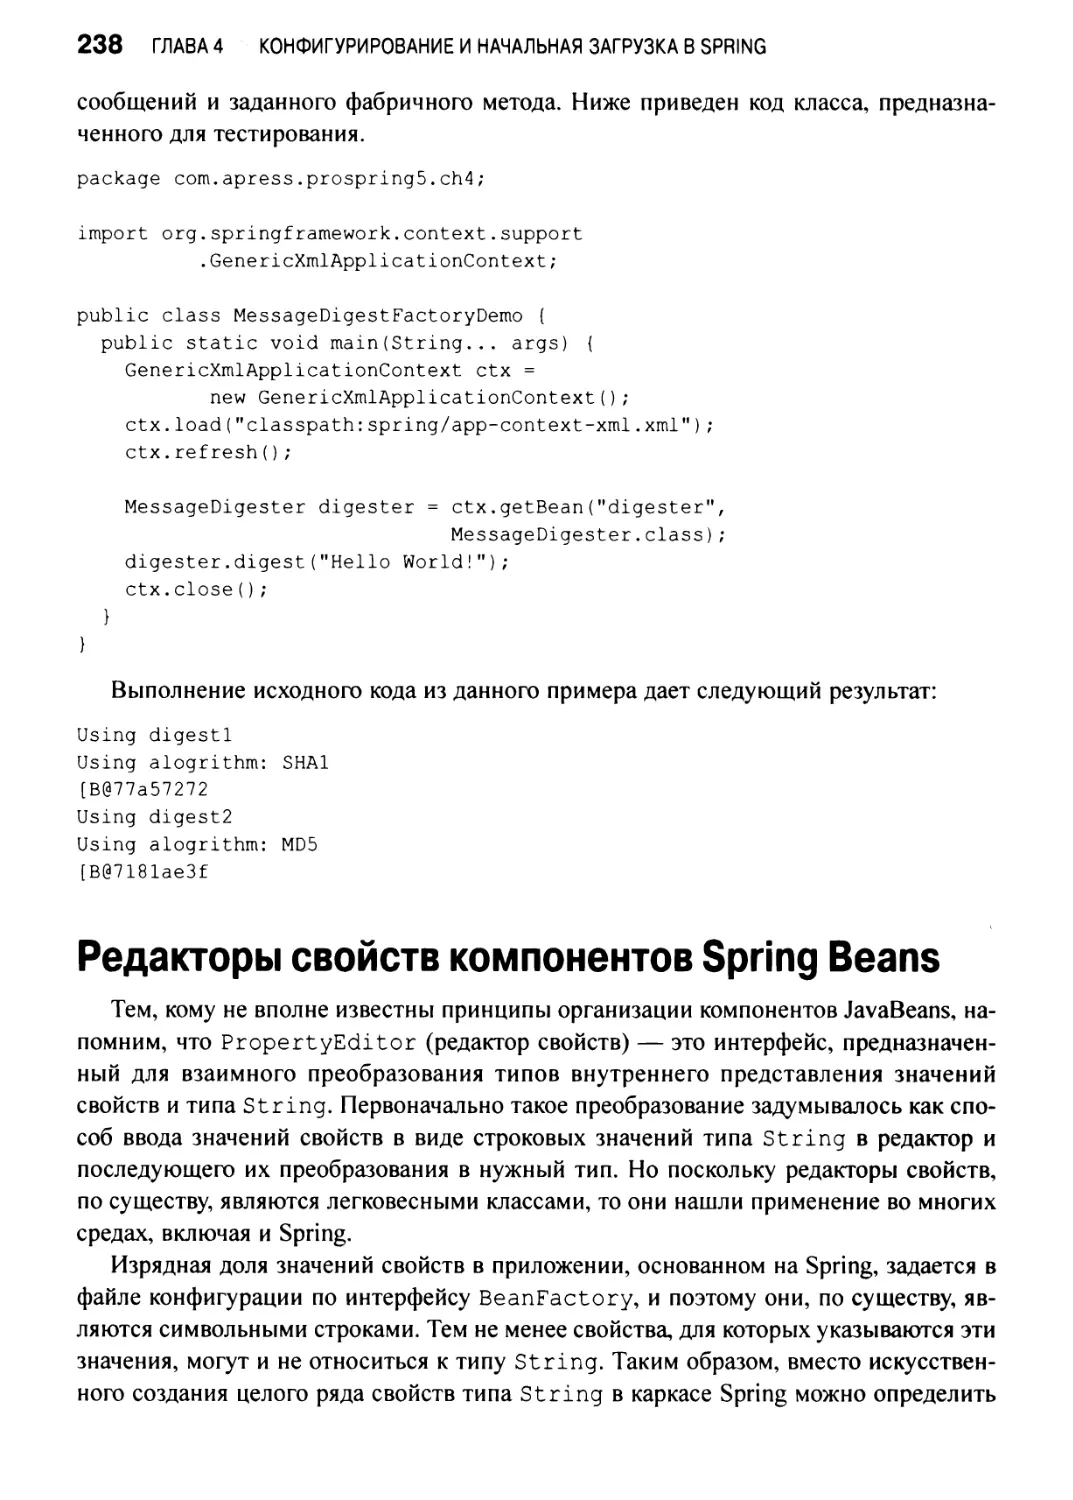 Редакторы свойств компонентов Spring Beans